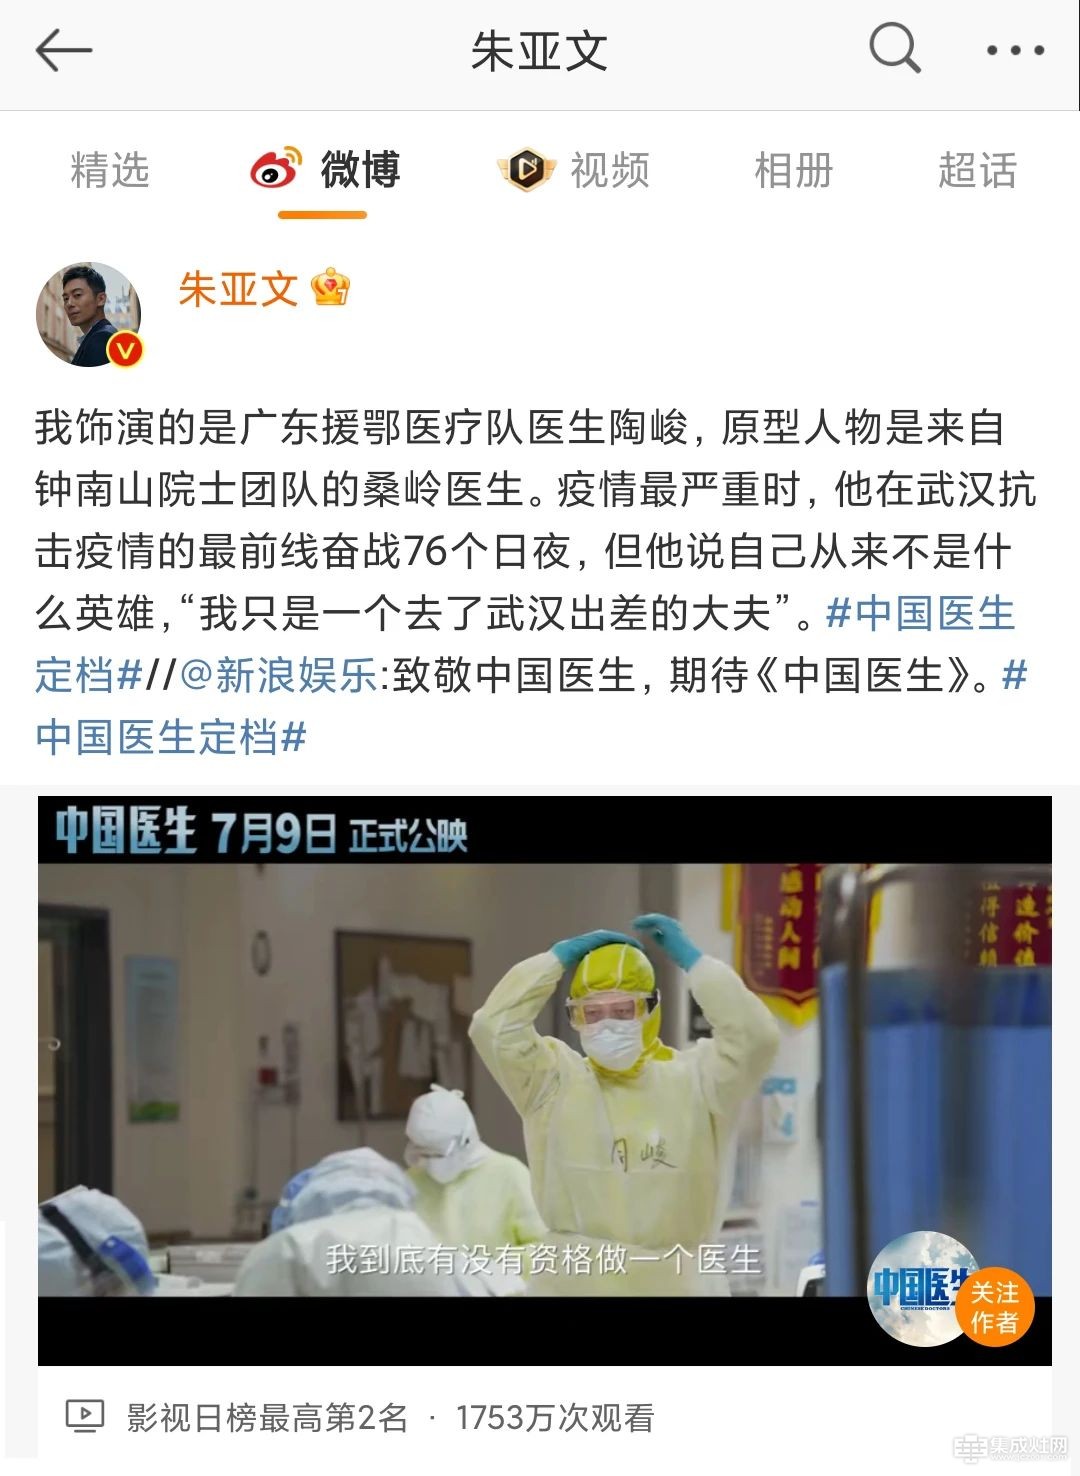 培恩代言人 朱亚文主演电影《中国医生》上线 个性十足在线圈粉